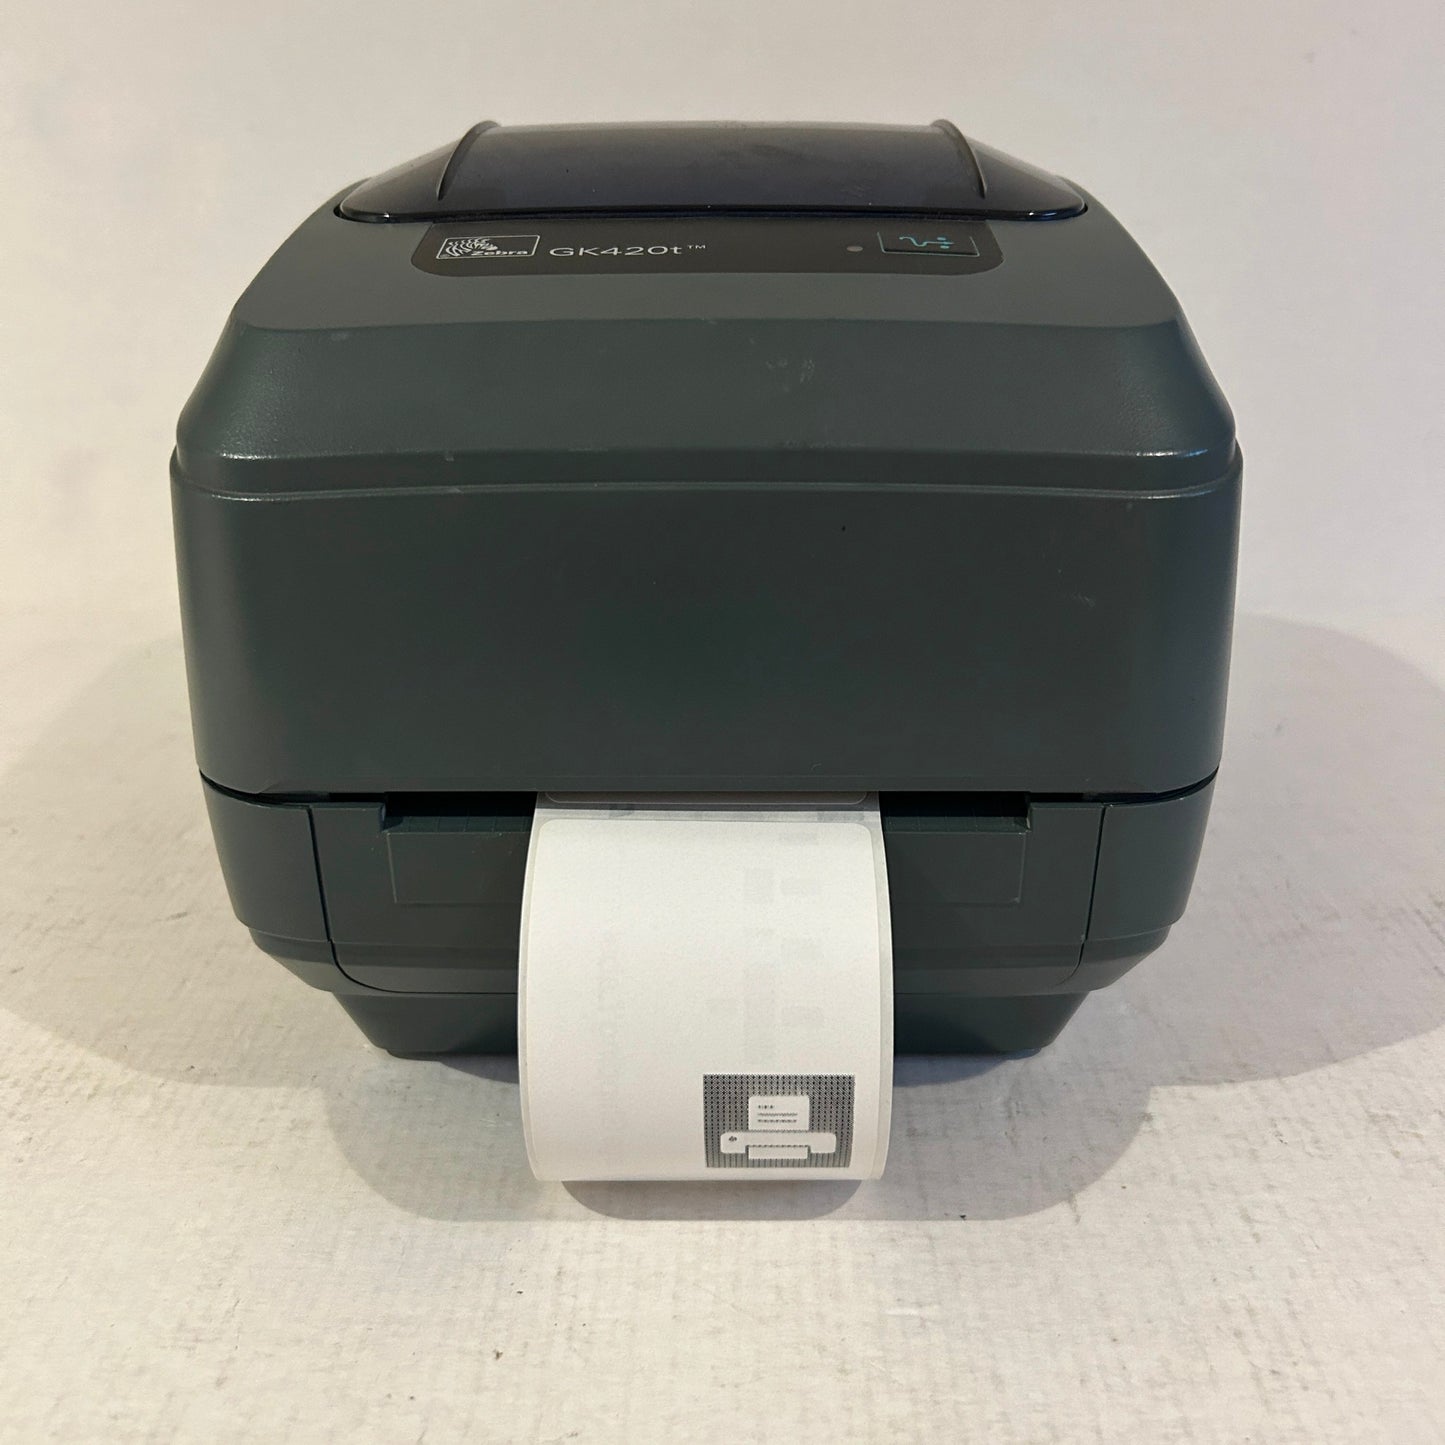 Zebra 4" Thermal Transfer Desktop Label Printer - GK420t